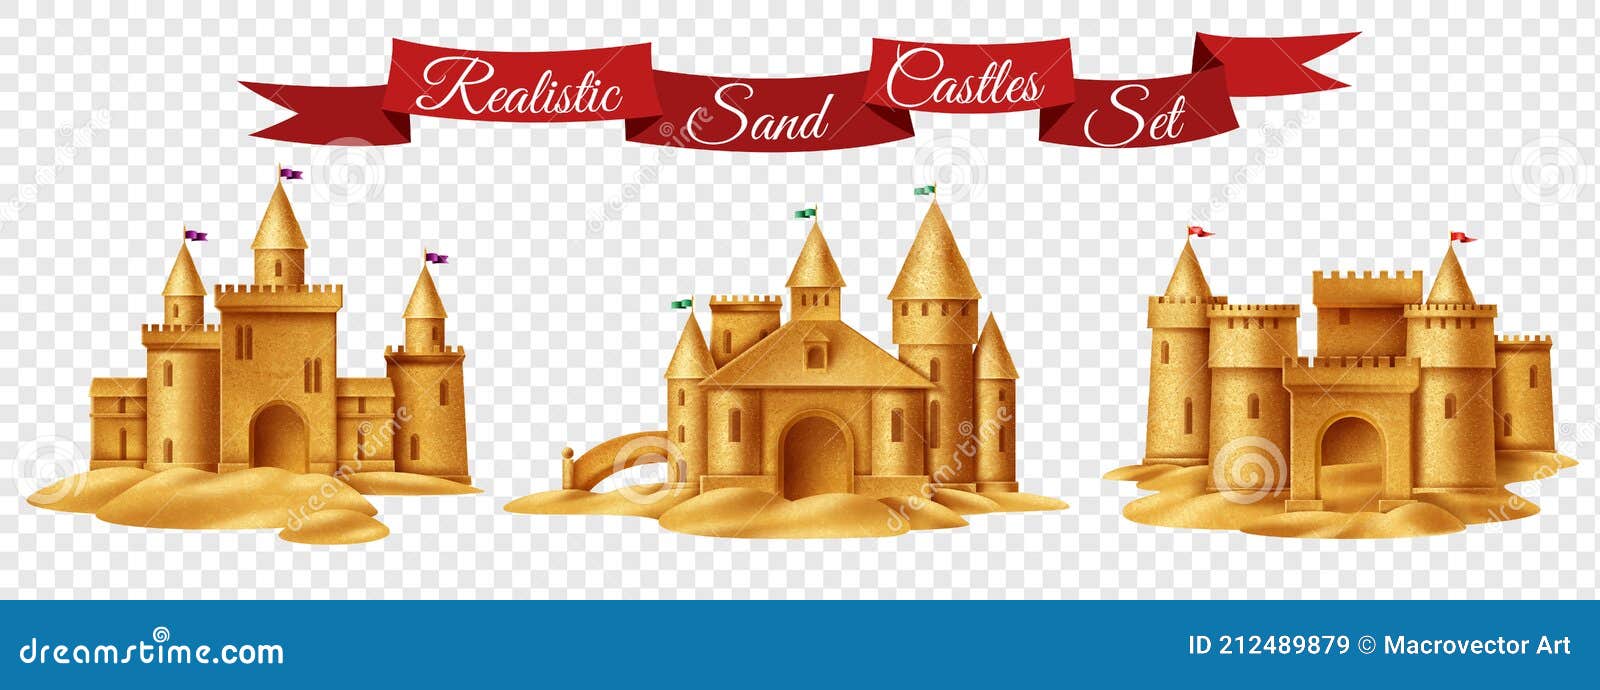 château de sable dessin animé style vecteur illustration sur blanc